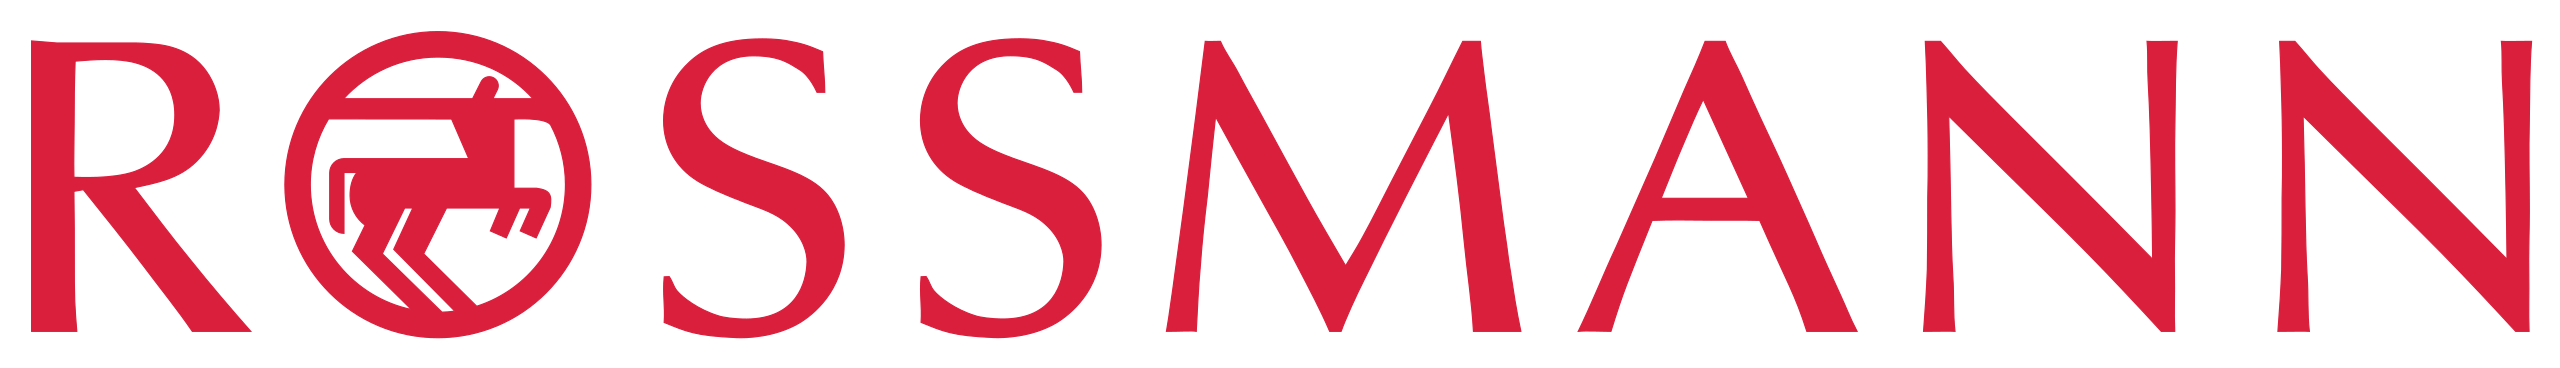 innovate-rossmann's provider logo